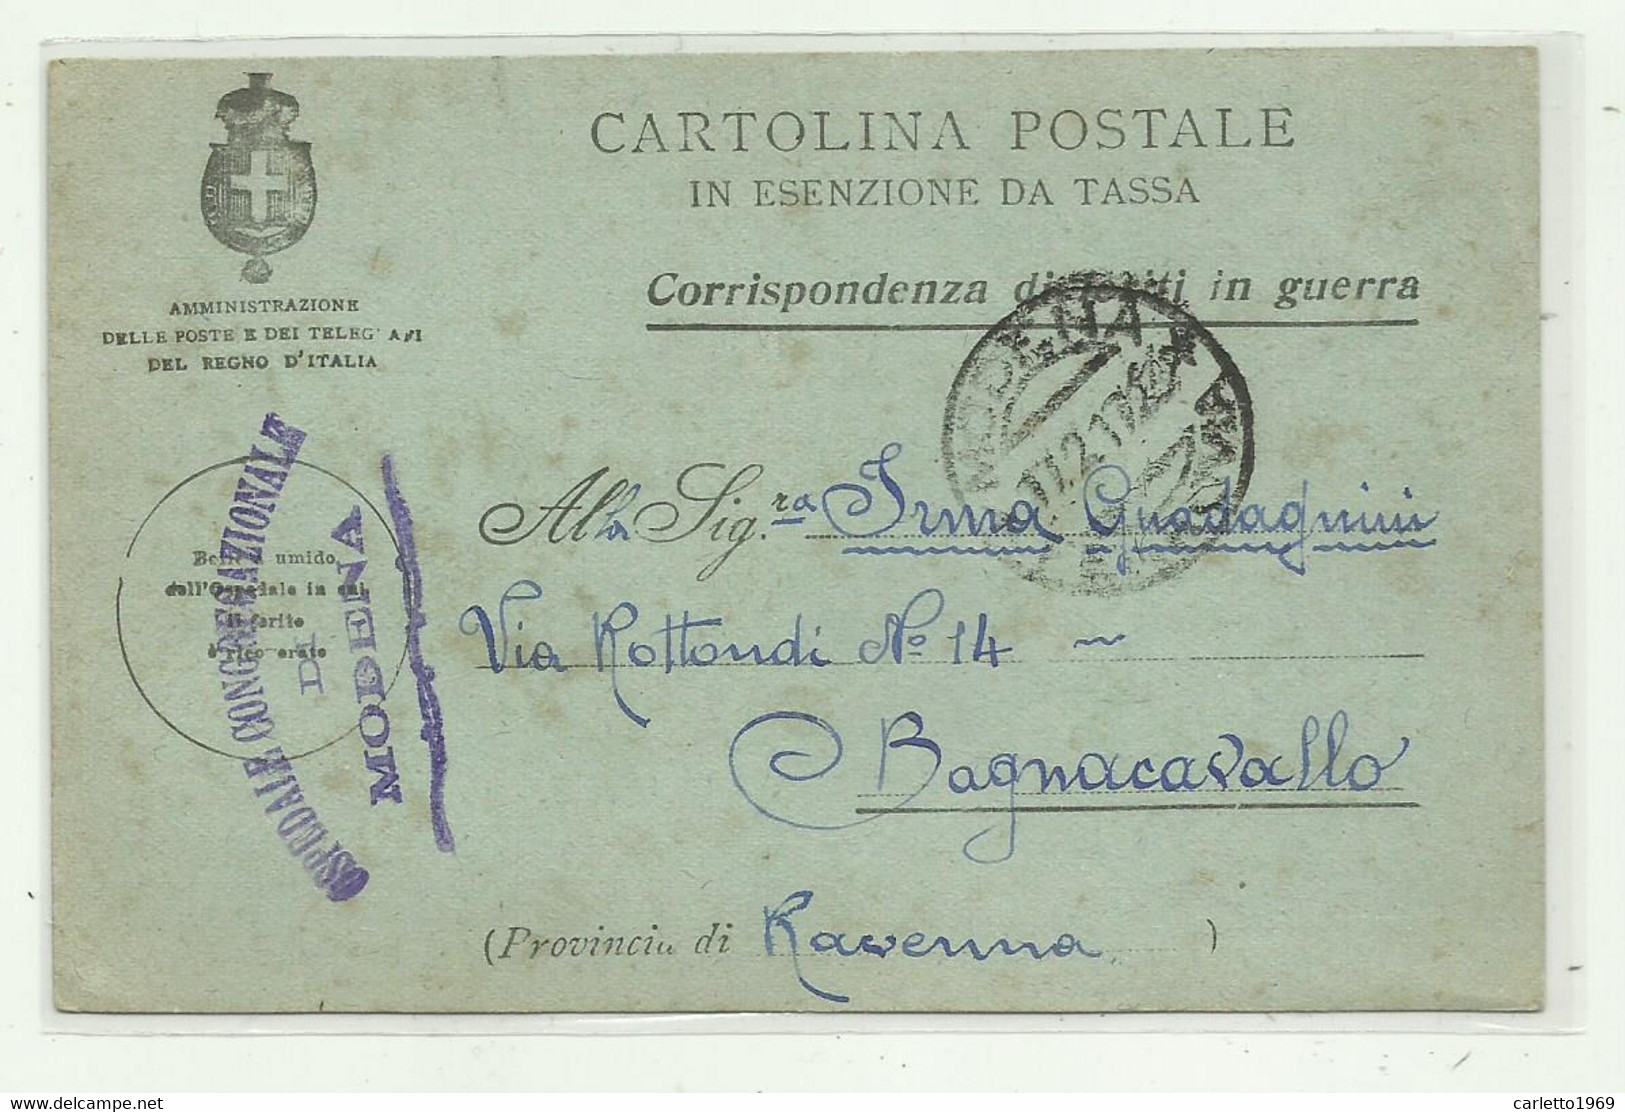 CARTOLINA POSTALE - CORRISPONDENZA DI FERITI IN GUERRA - OSPEDALE CONGREGAZIONALE MODENA 1917 - Franquicia